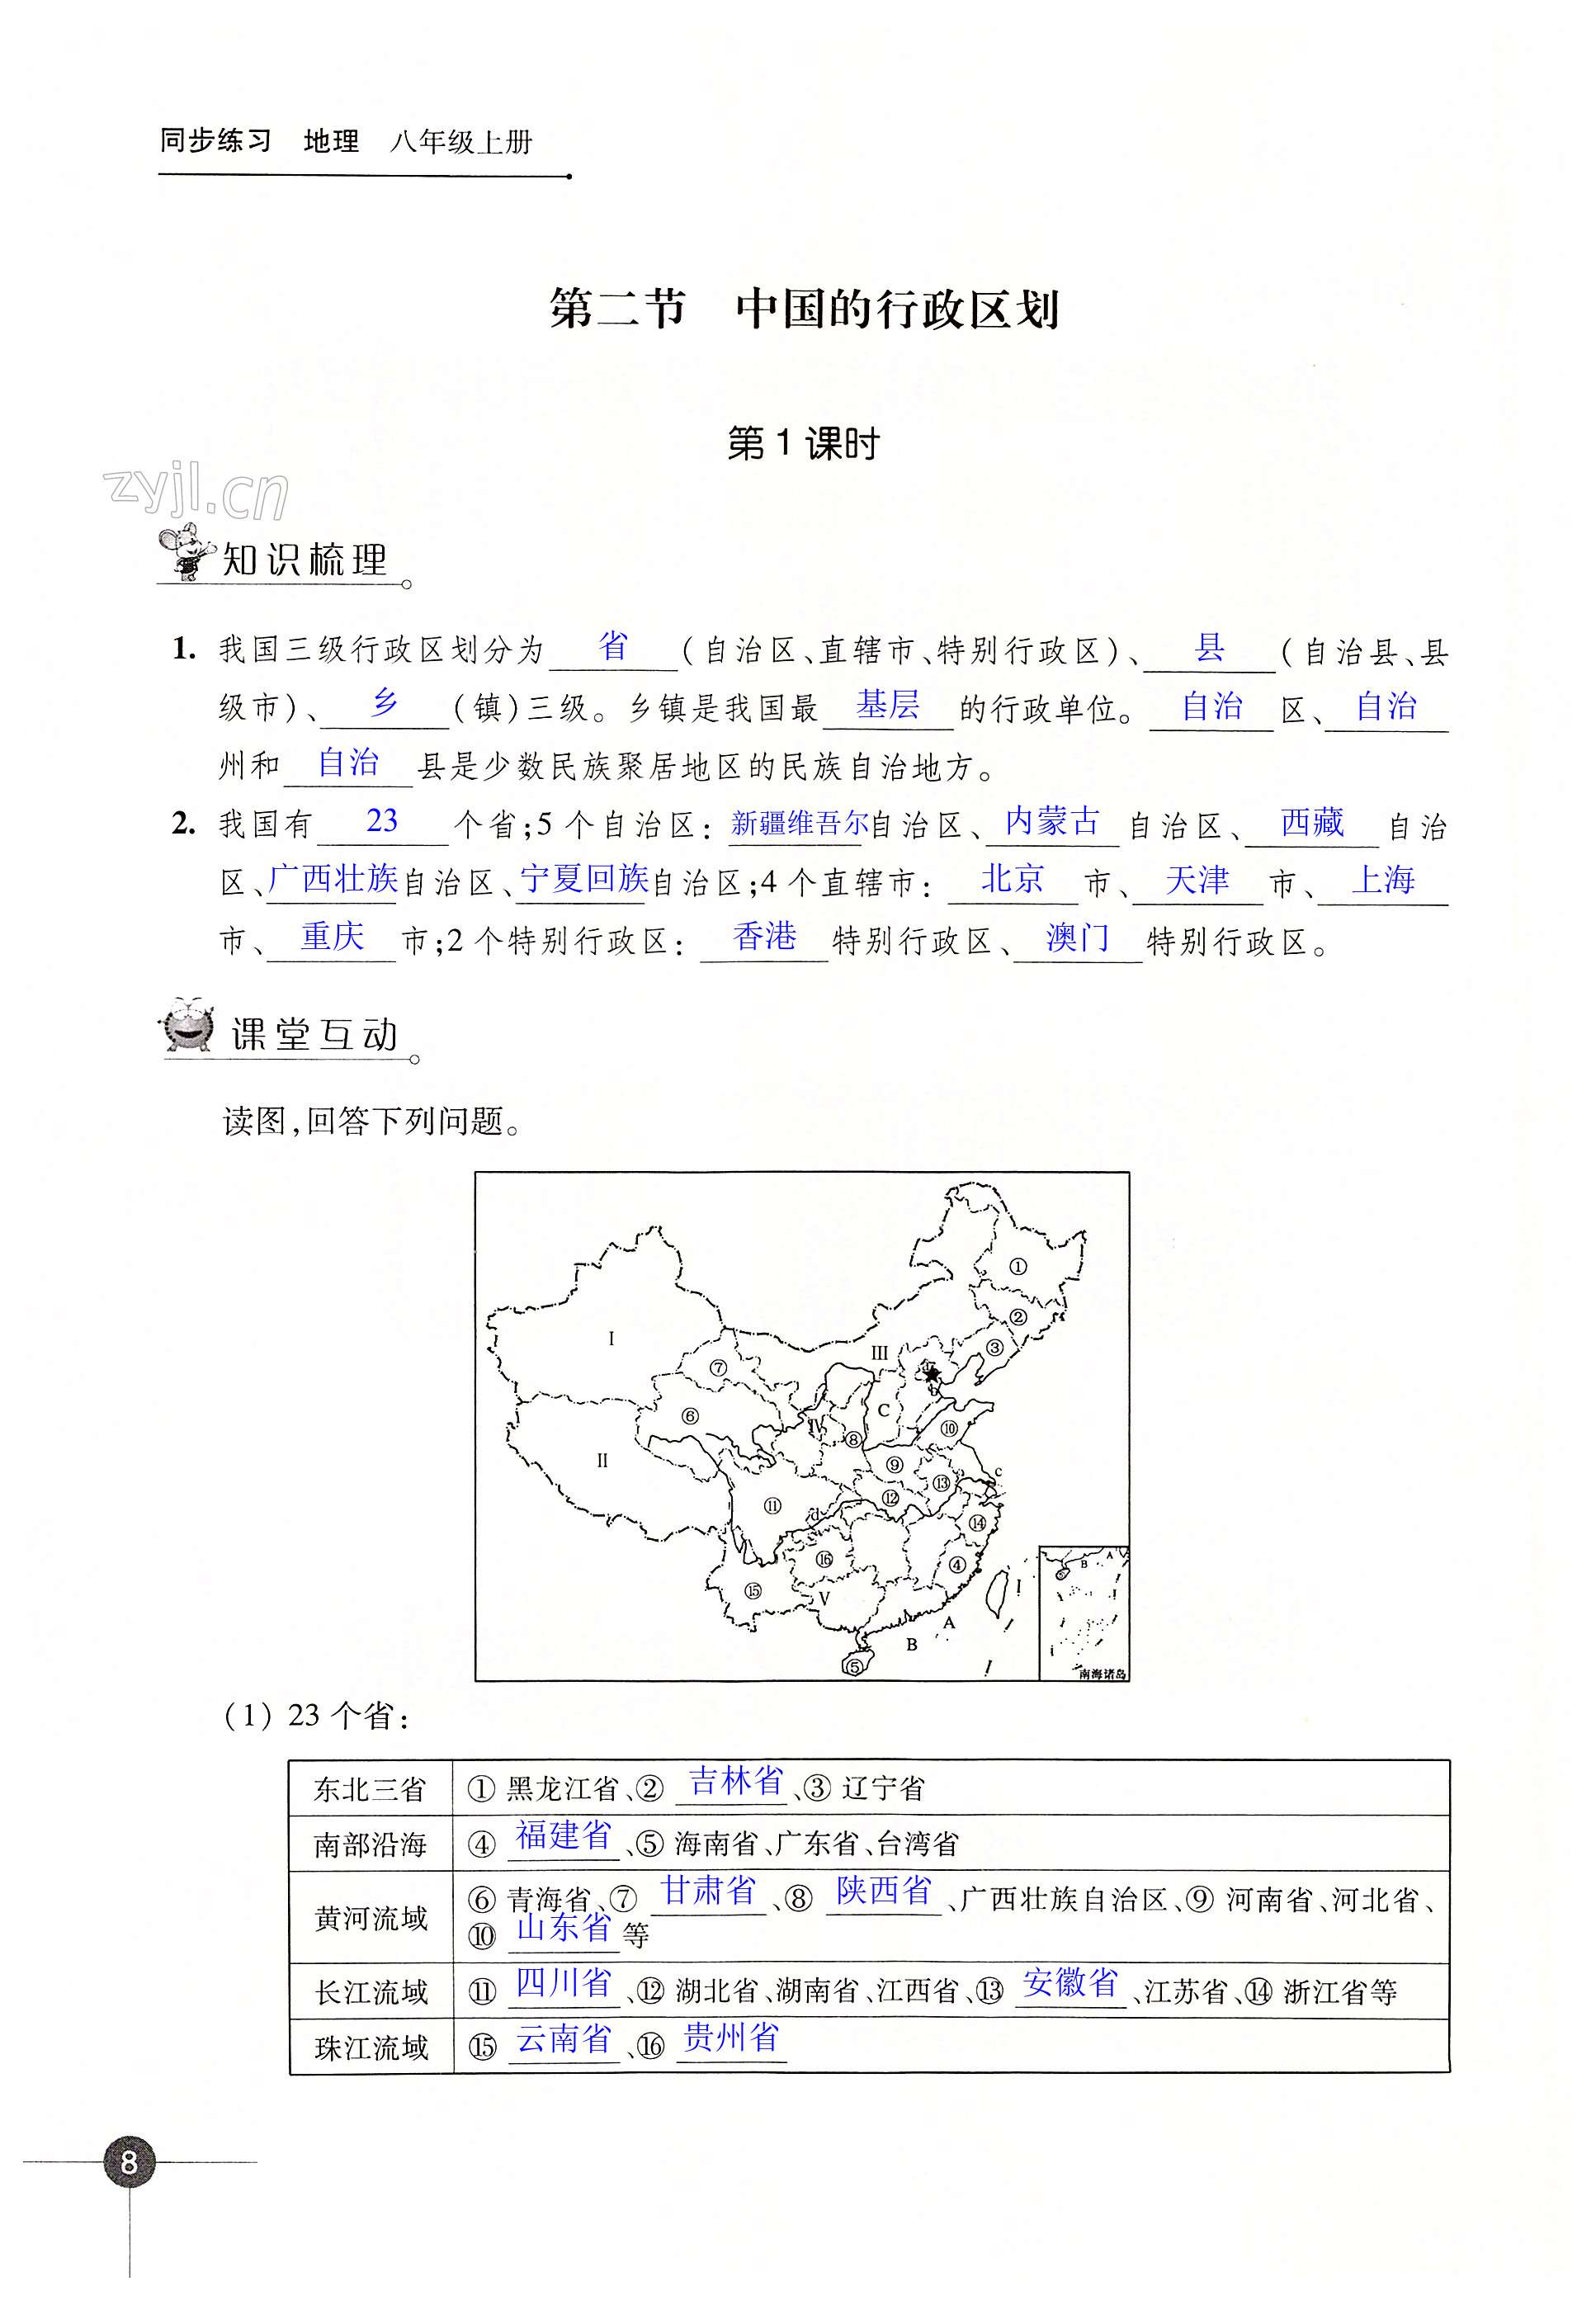 第一章 中国的疆域与人口 - 第8页